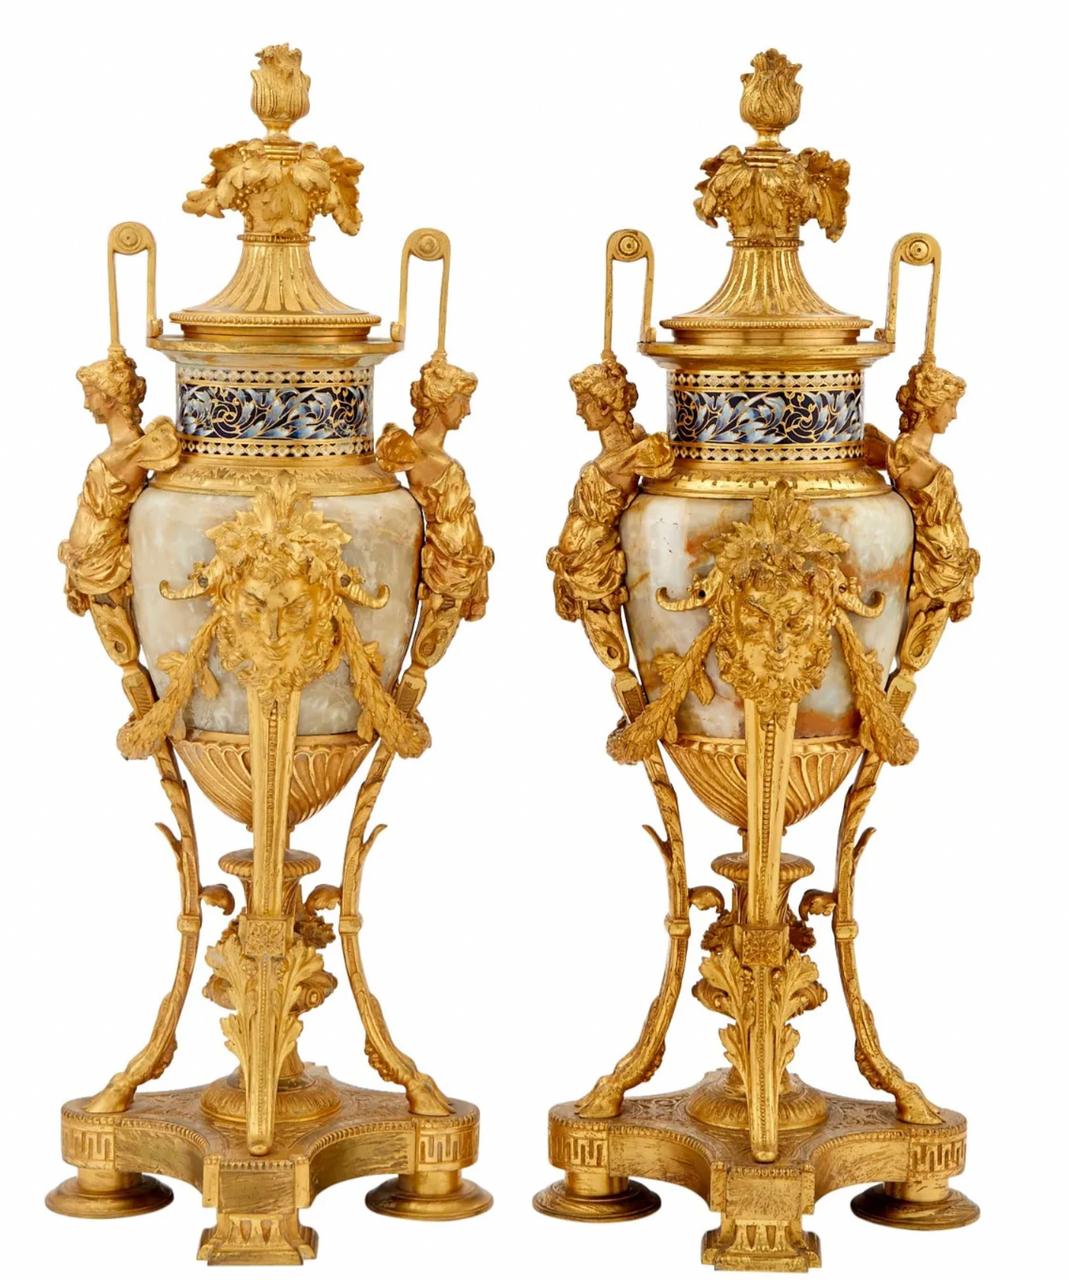 Bronze A Renaissance Revival Onyx and Champlevé Planter with Cloisonné Enamel Urns For Sale